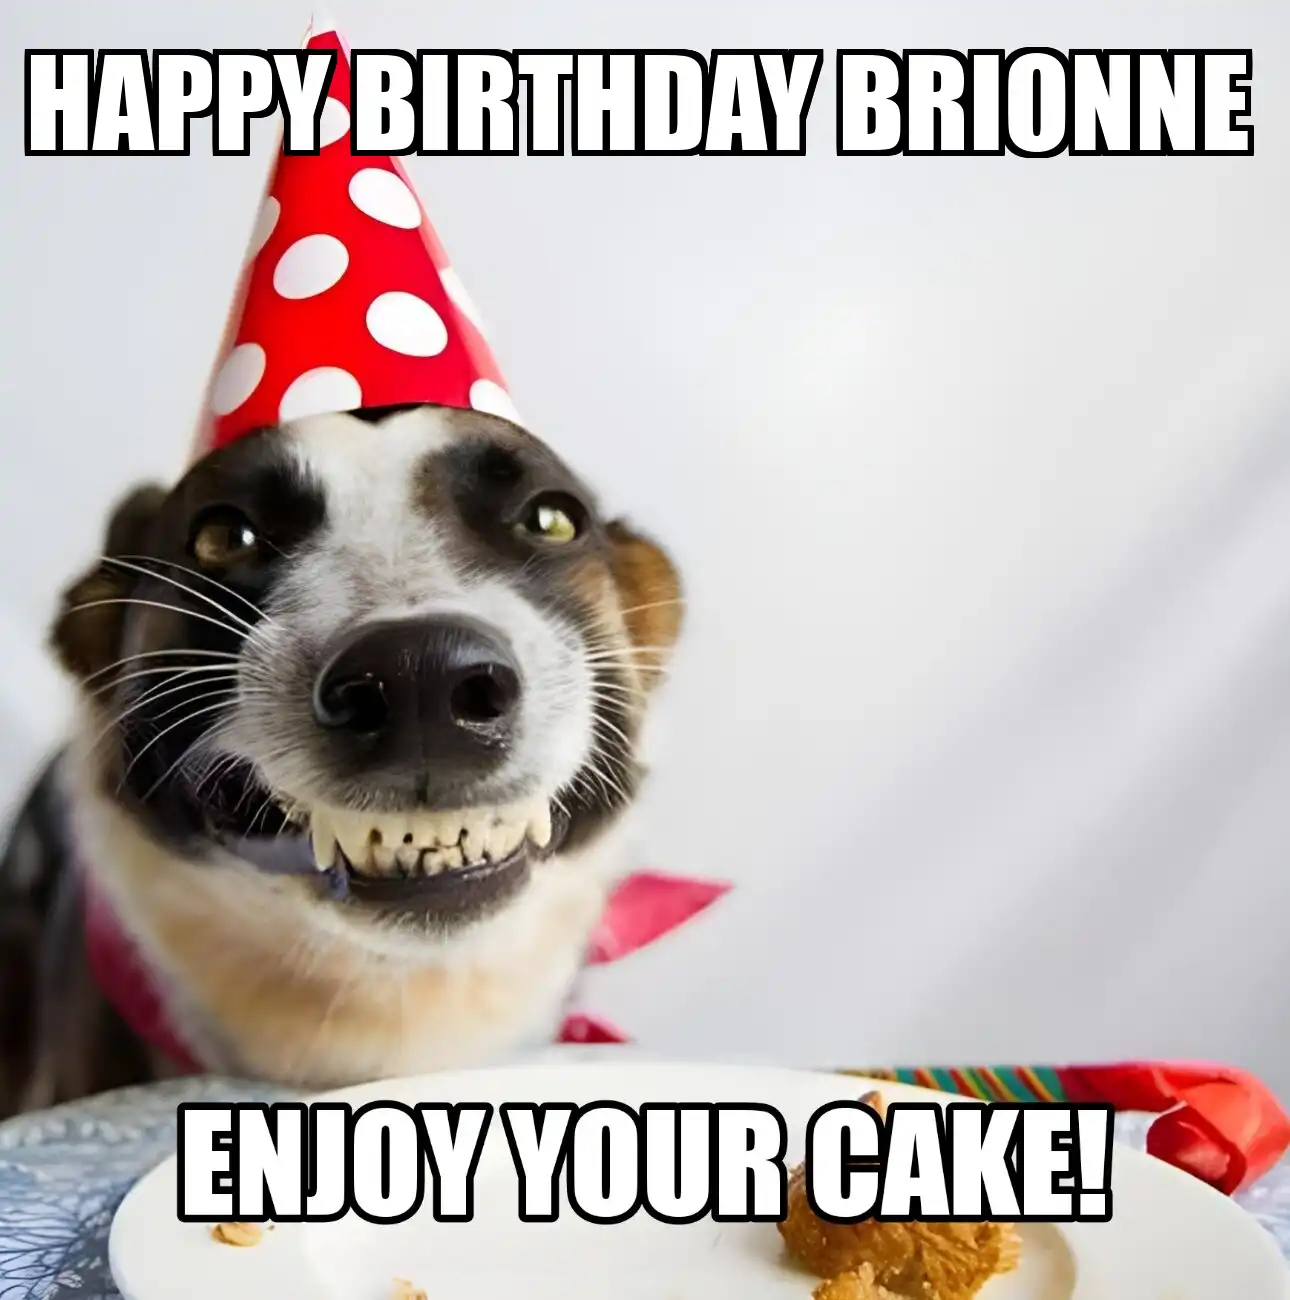 Happy Birthday Brionne Enjoy Your Cake Dog Meme